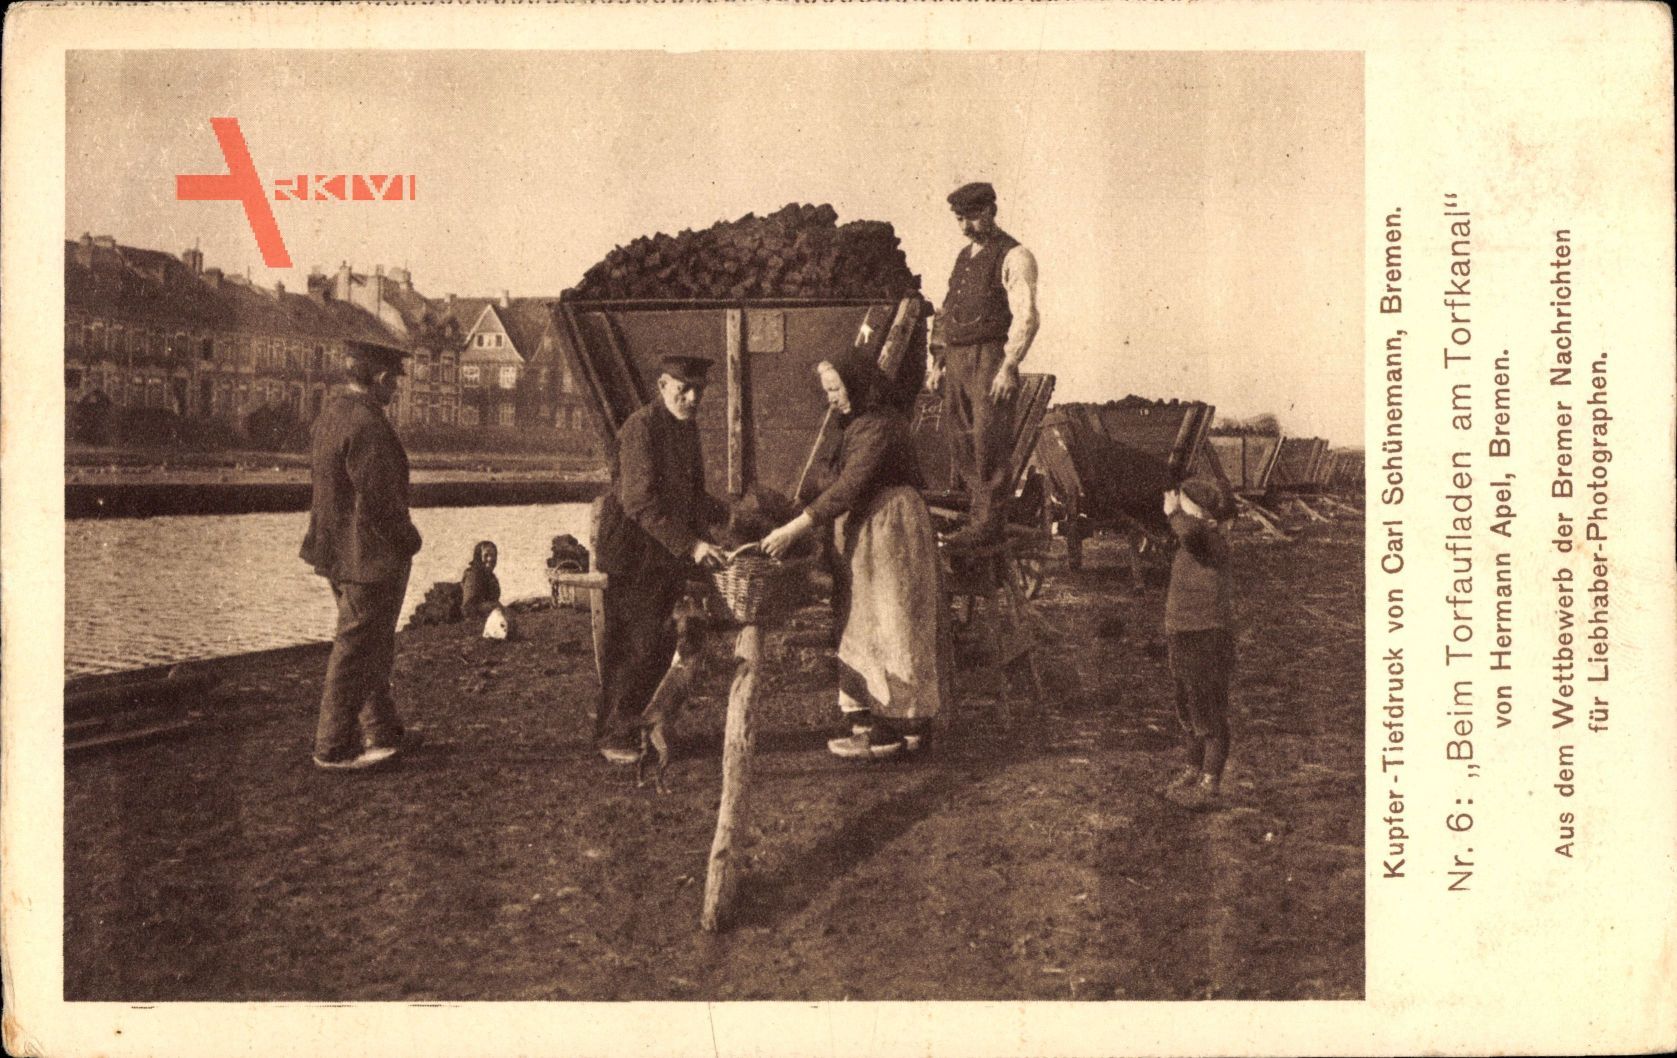 Beim Torfaufladen am Torfkanal, Bauern mit Karren bei der Arbeit